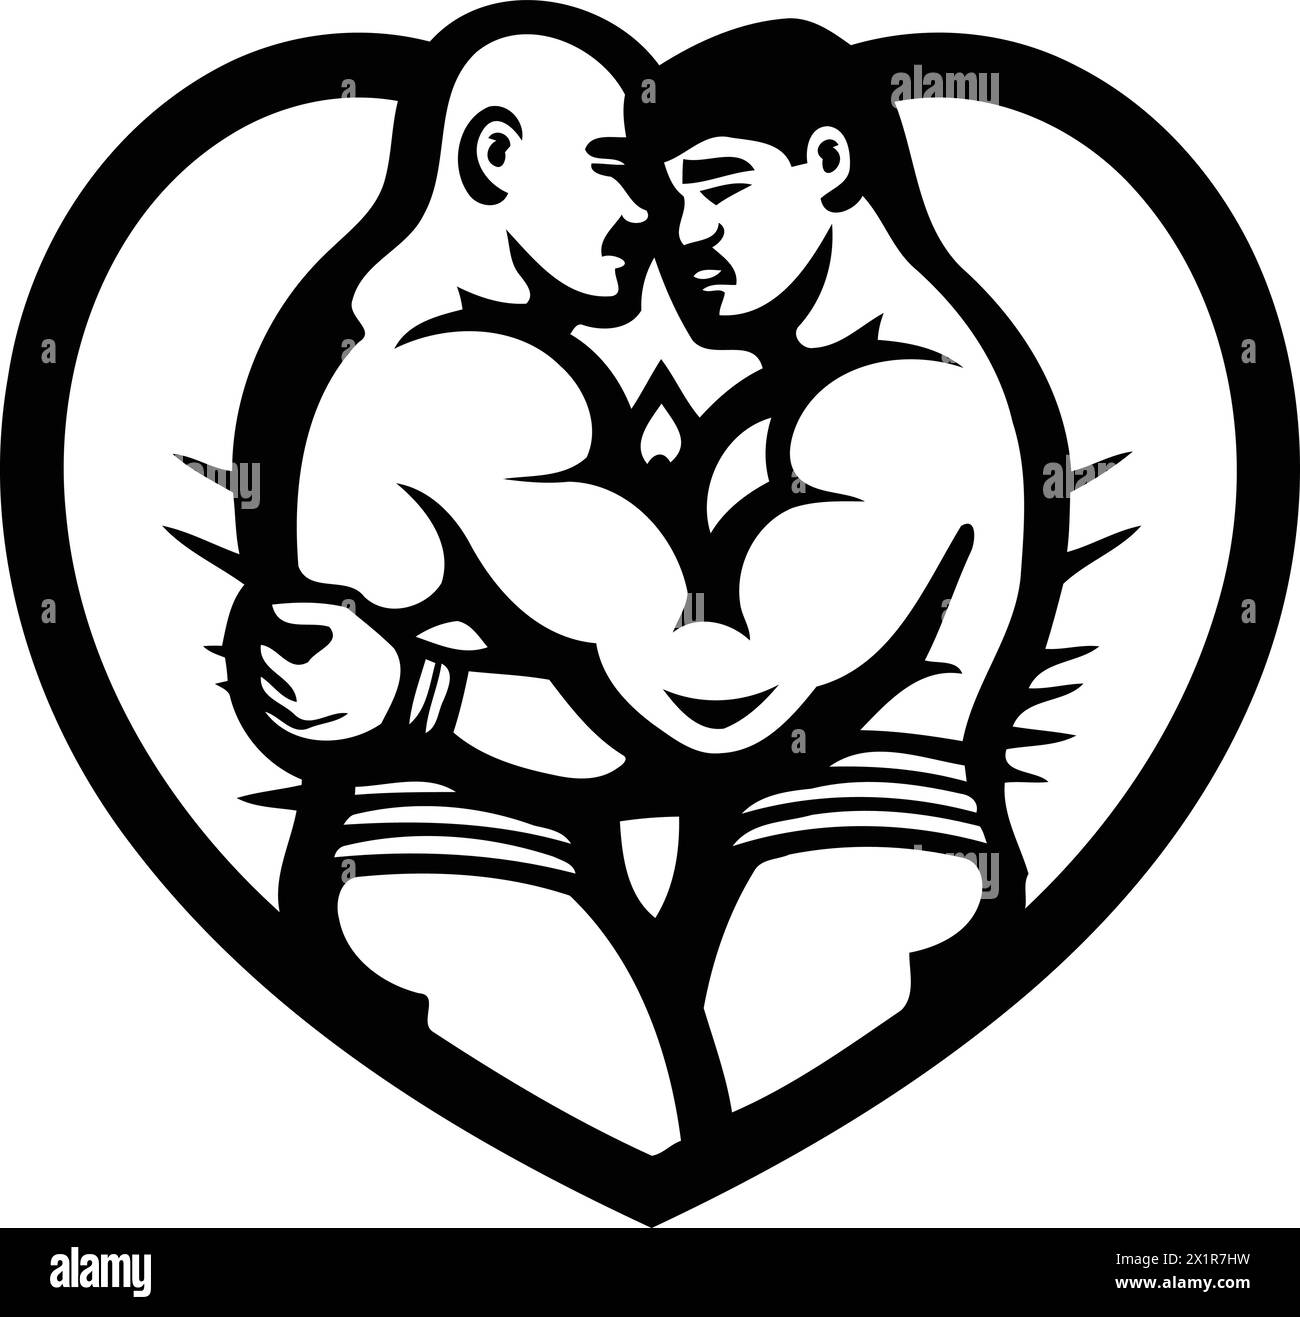 Vektor-Illustration von zwei starken Männern, die sich in Herzform umarmen. Stock Vektor